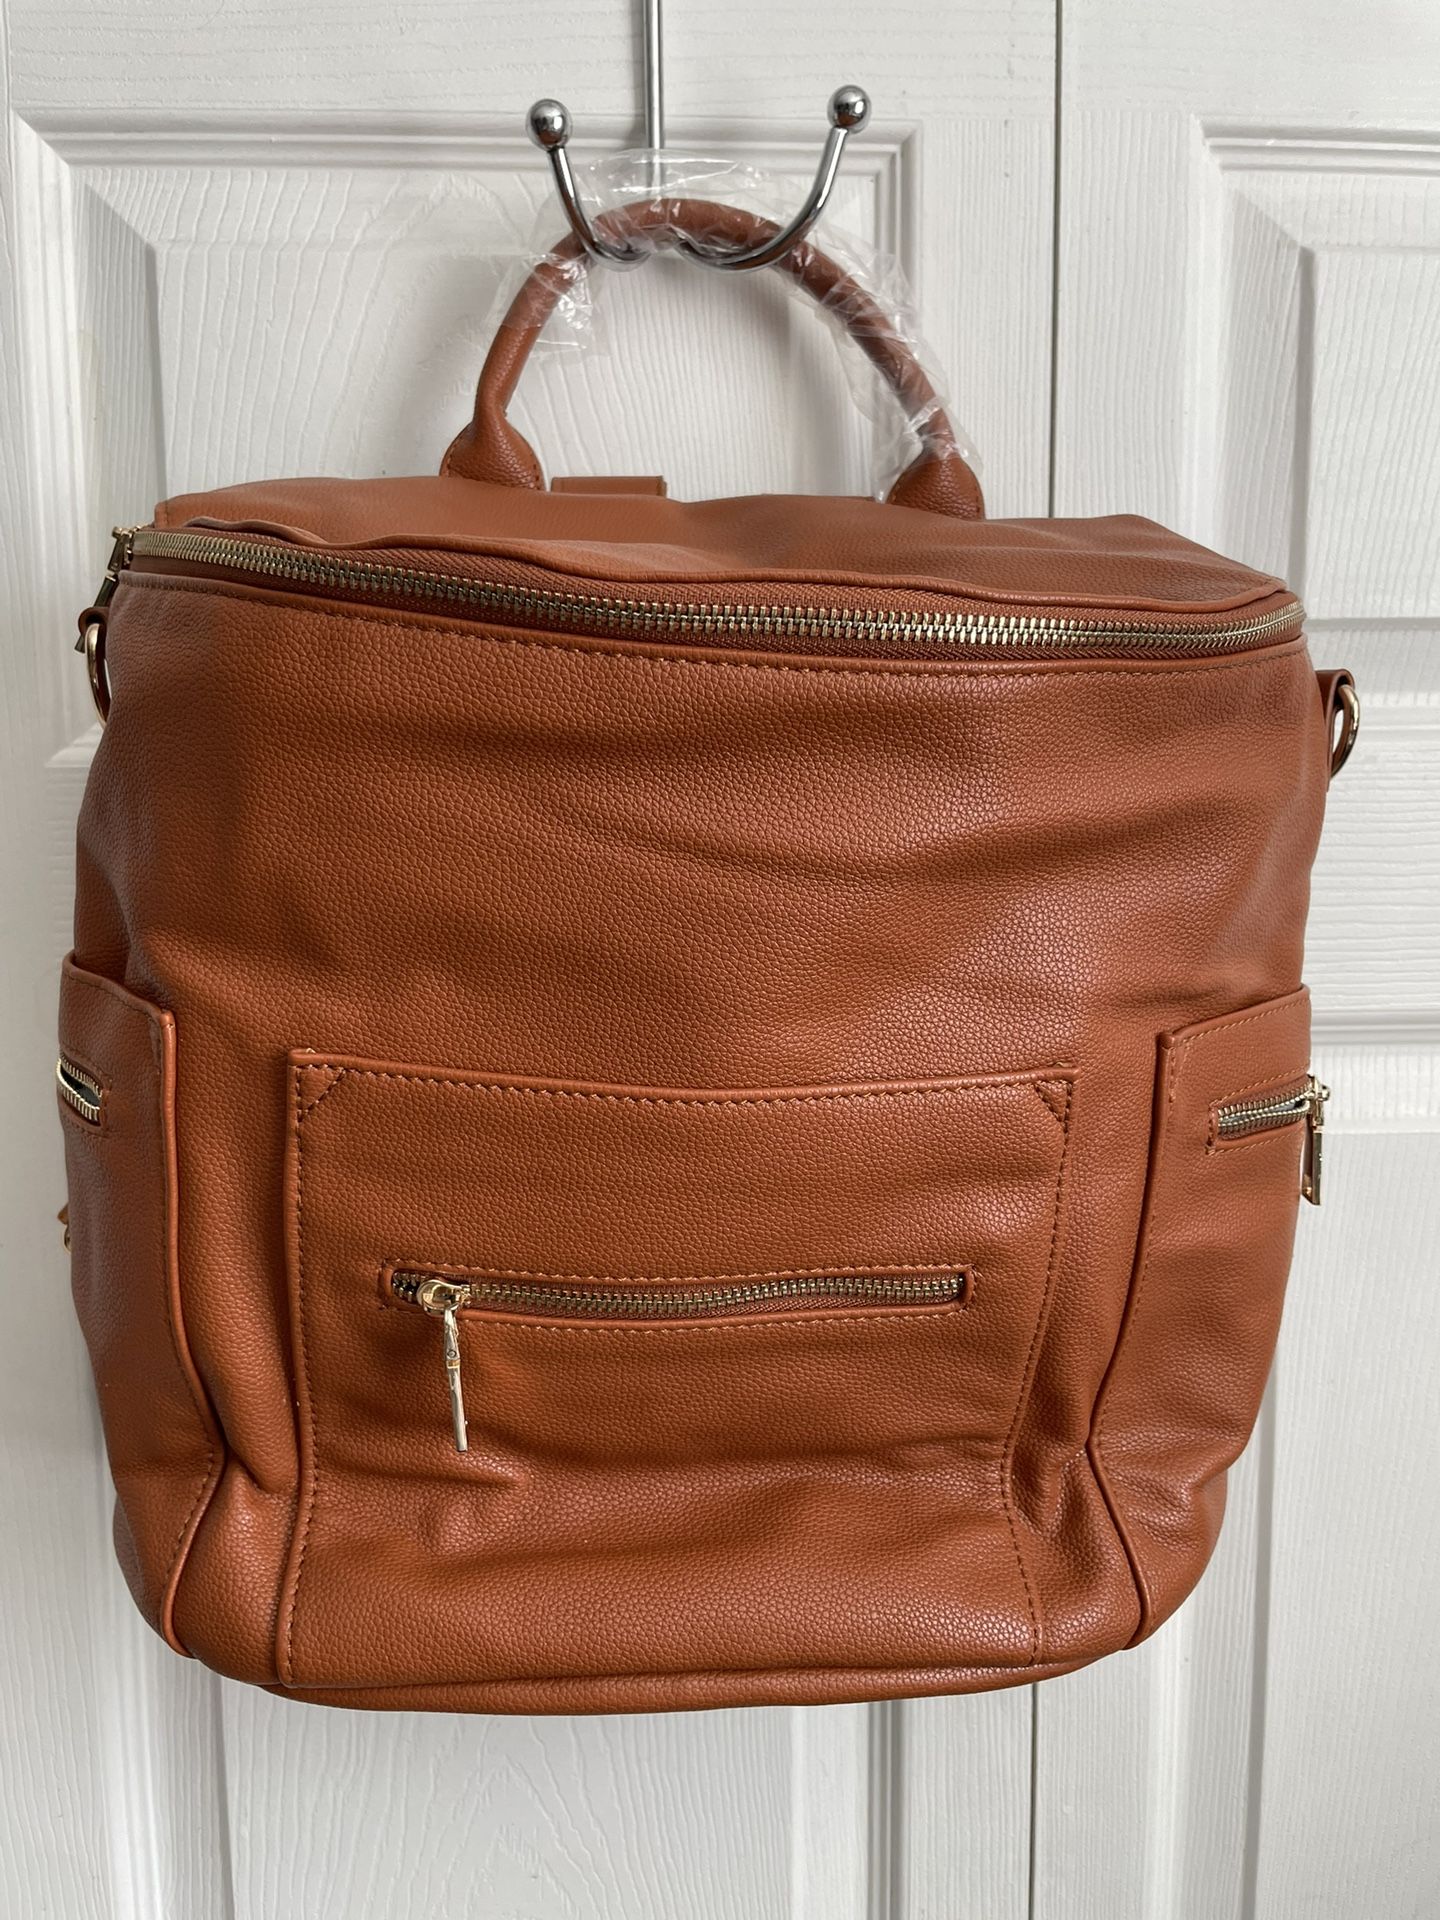 Backpack/diaper Bag